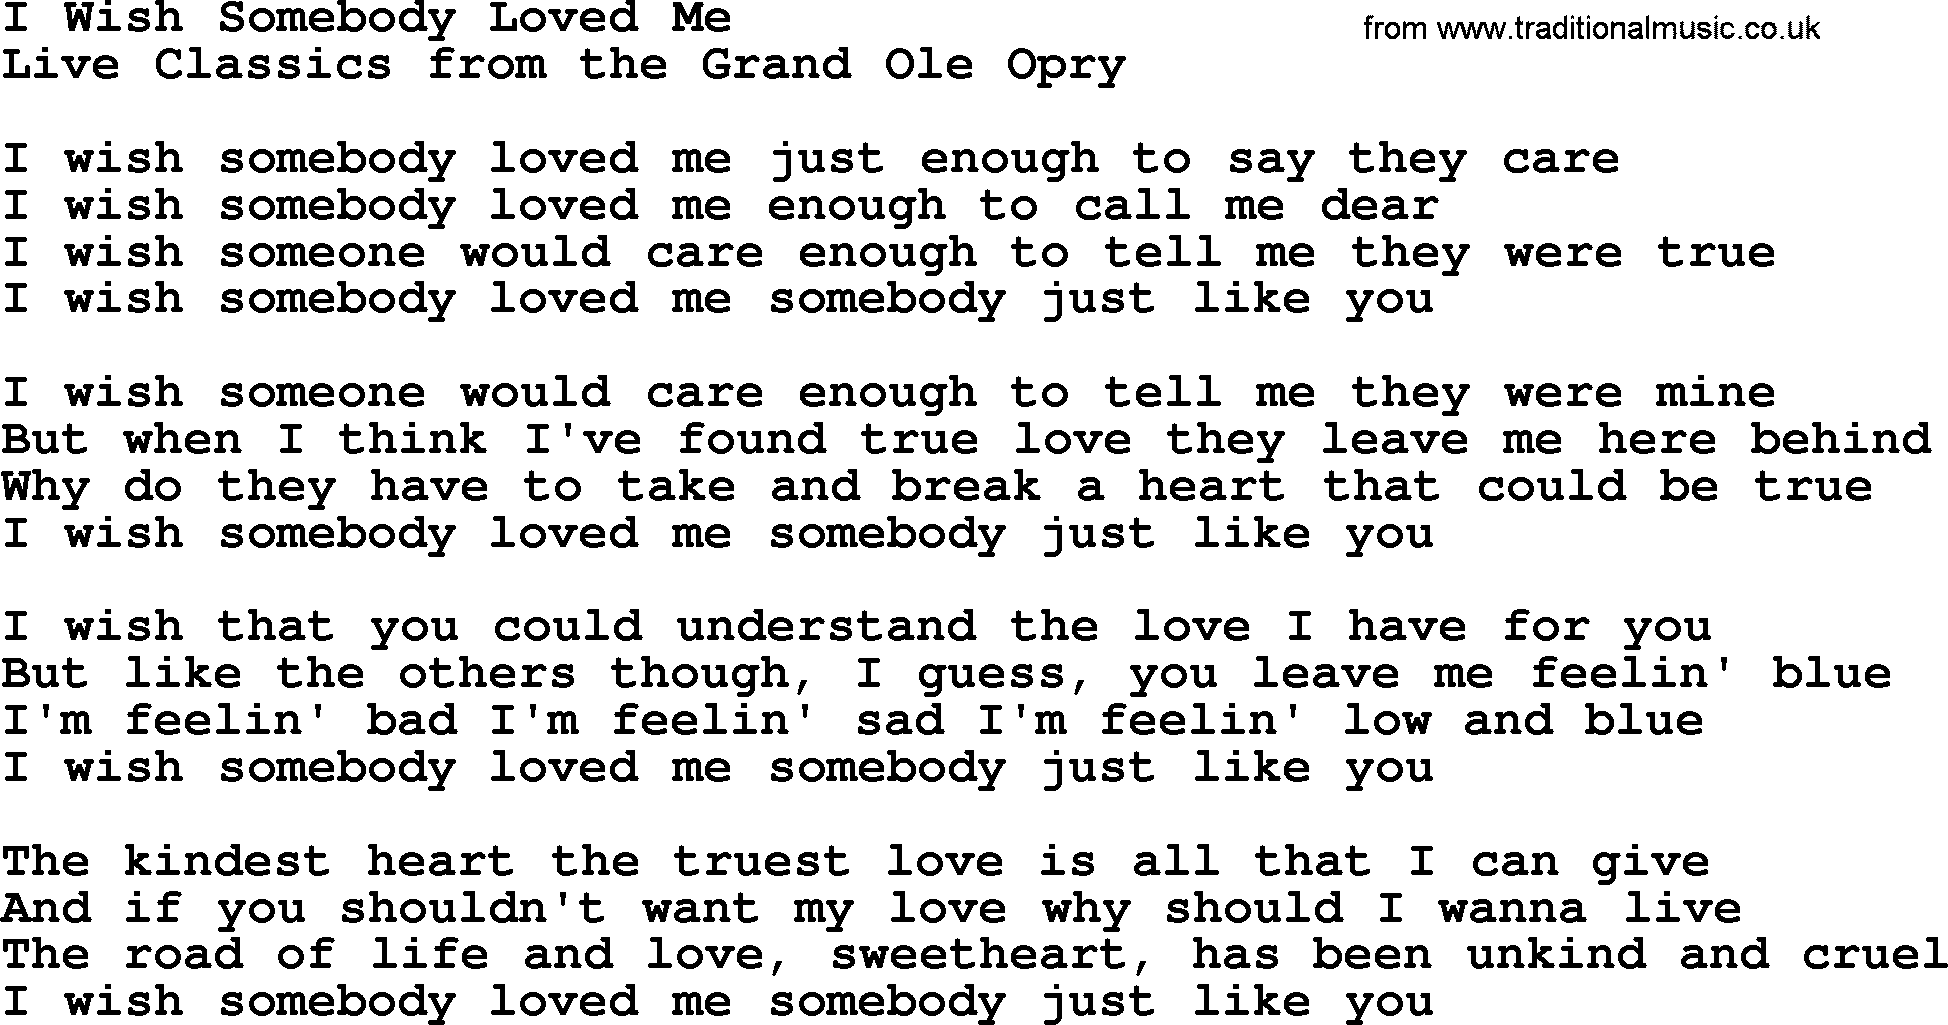 Marty Robbins song: I Wish Somebody Loved Me, lyrics